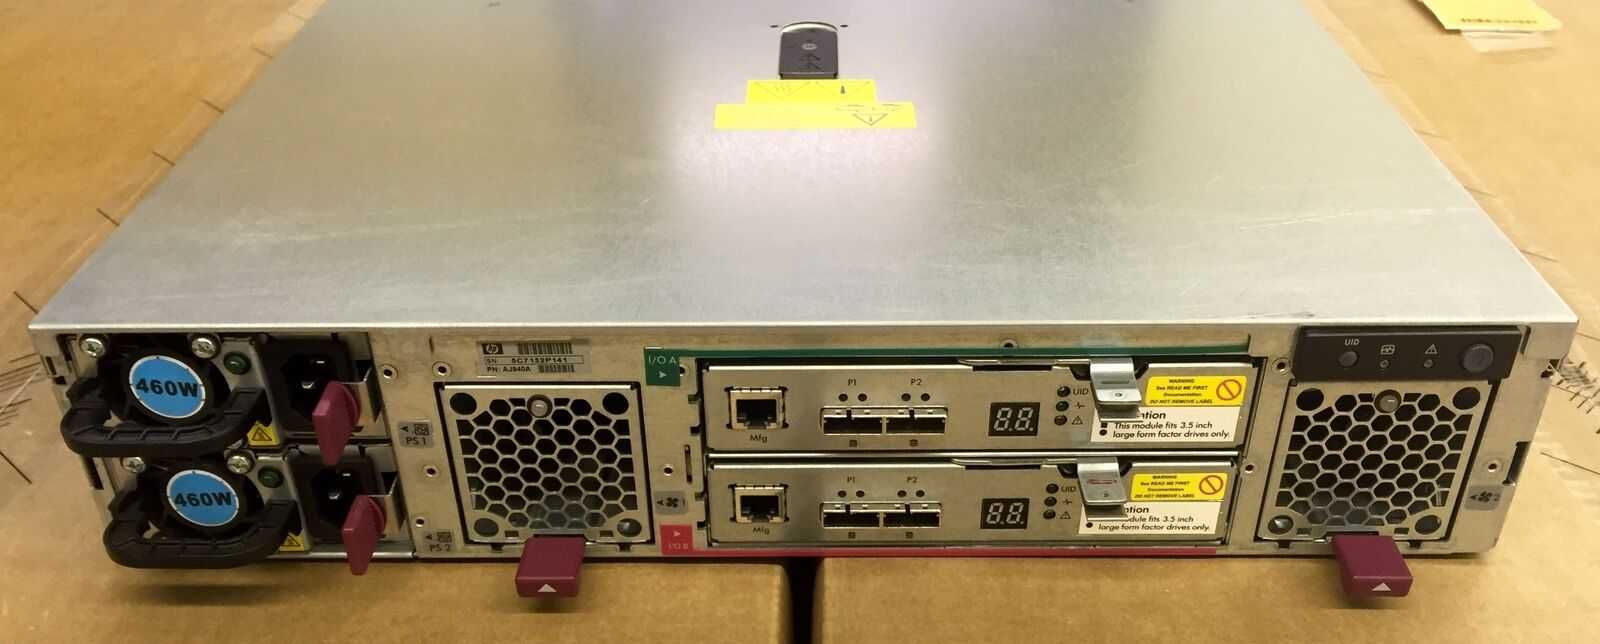 Storage | HP D2600 - Espaço para 12 x Discos de 3.5" COM CADDYS